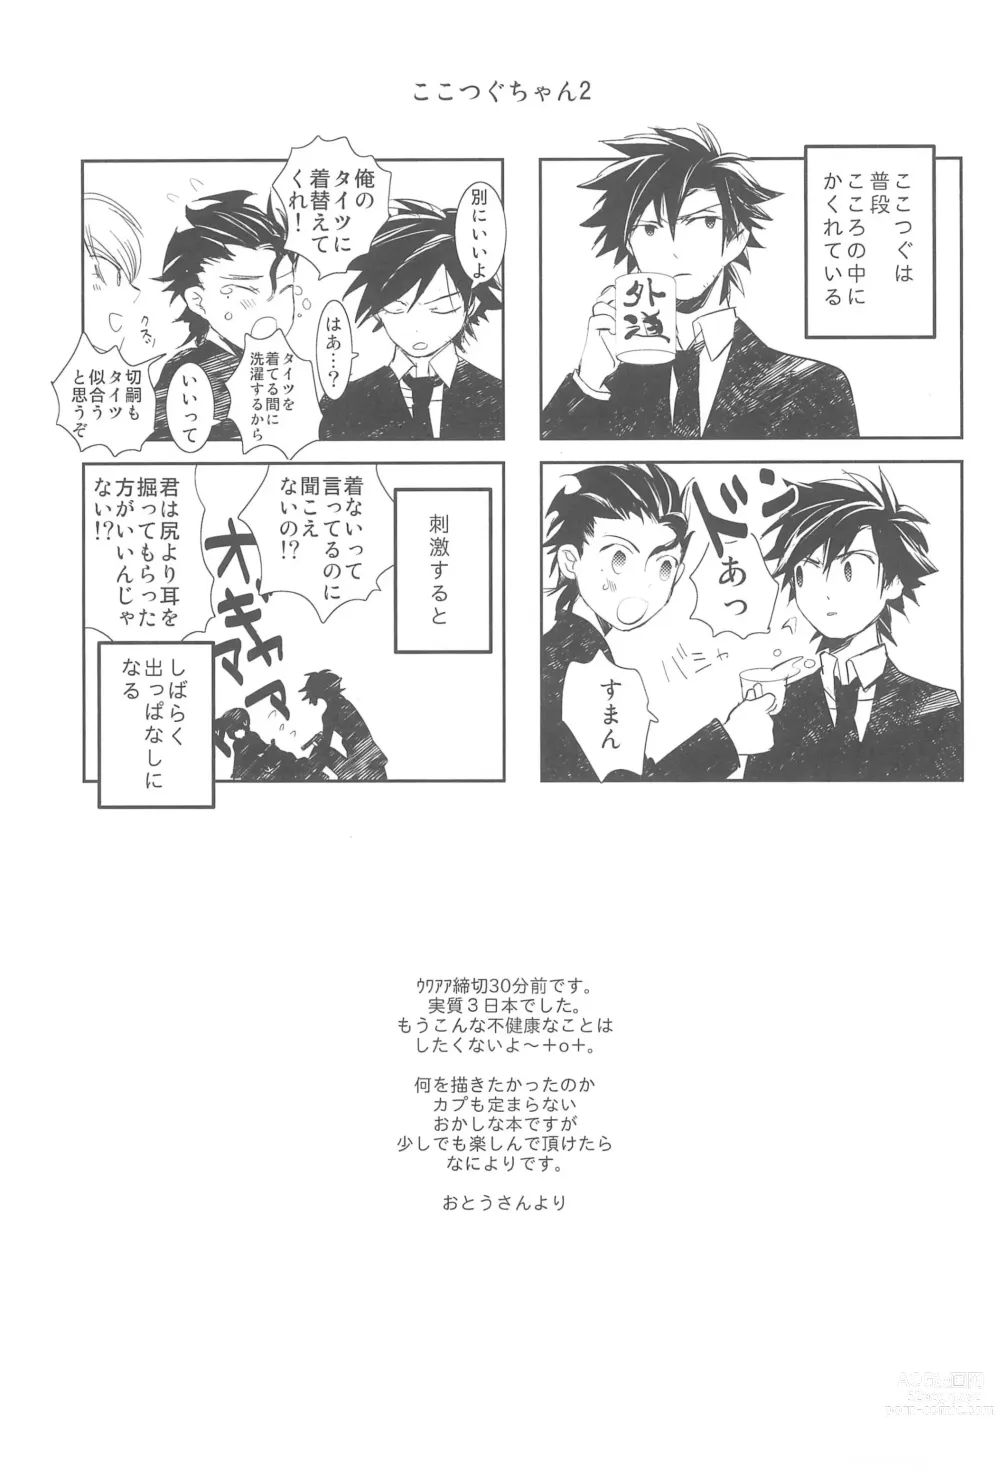 Page 19 of doujinshi Omise no Neko 3.5